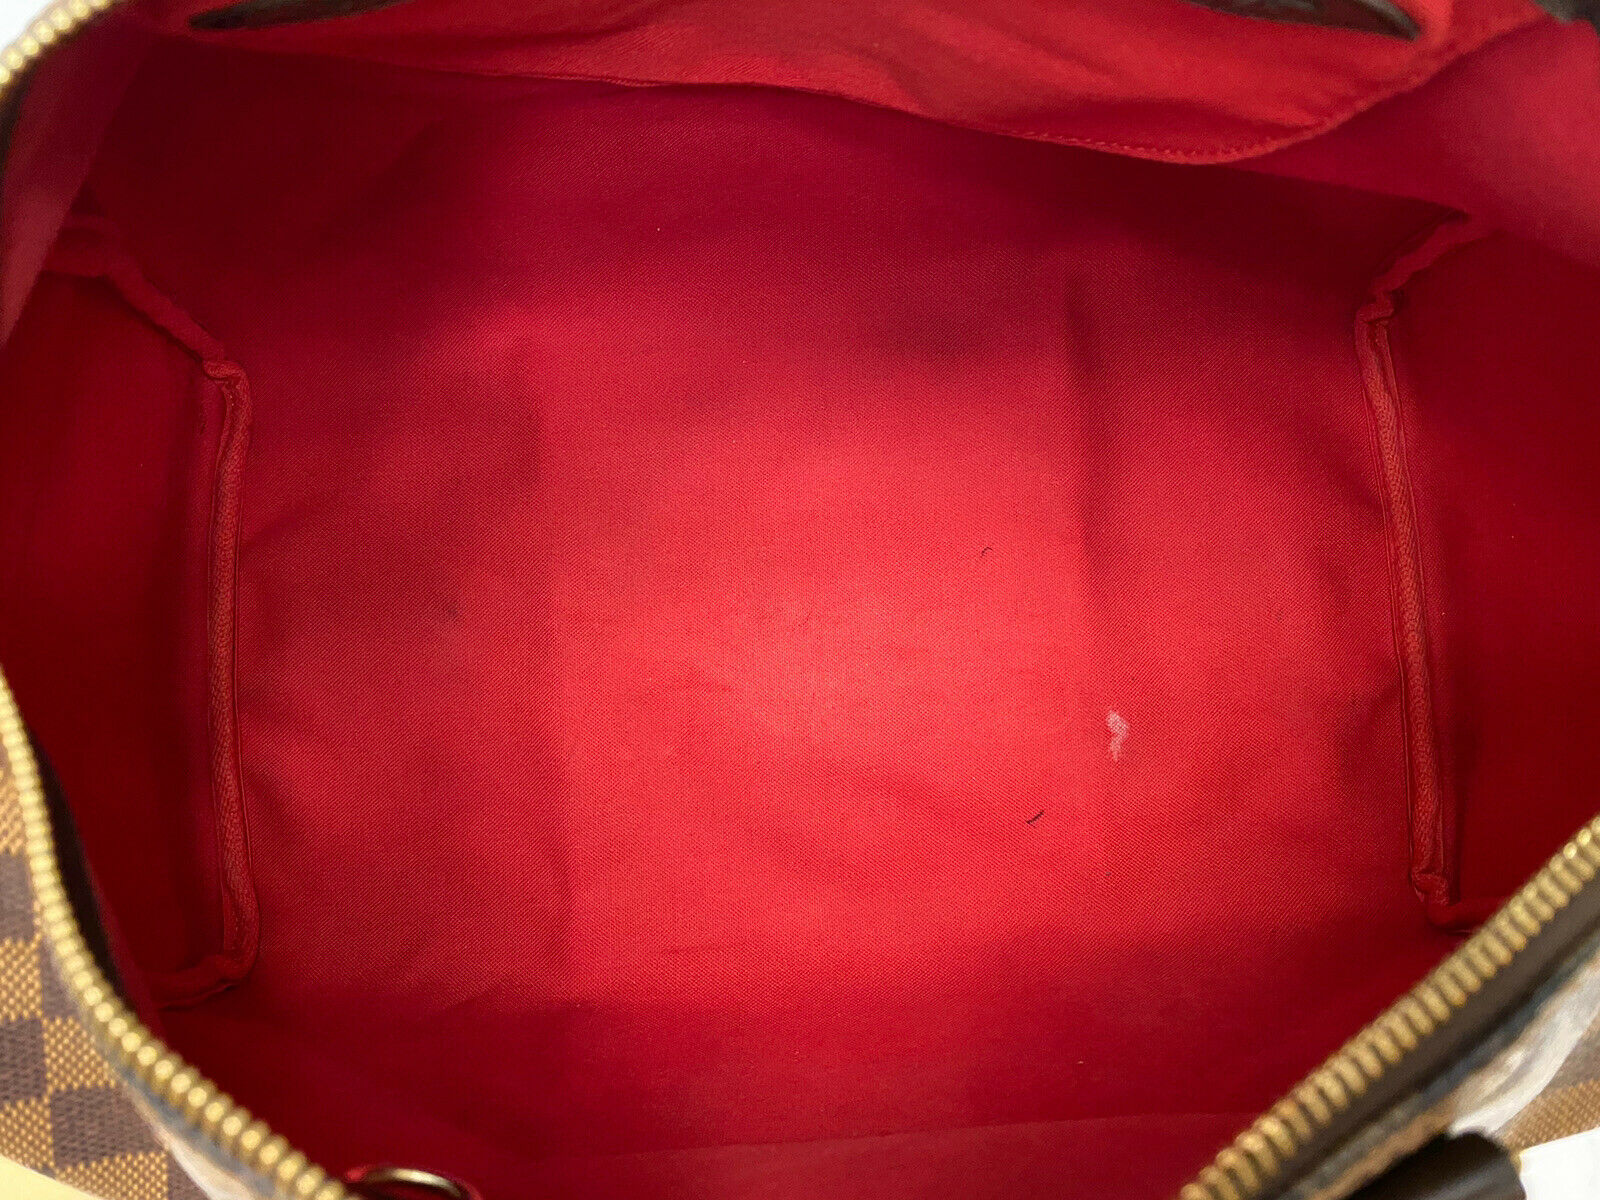 Louis Vuitton Speedy 35 Damier Ebene Handbag for Sale in Oviedo